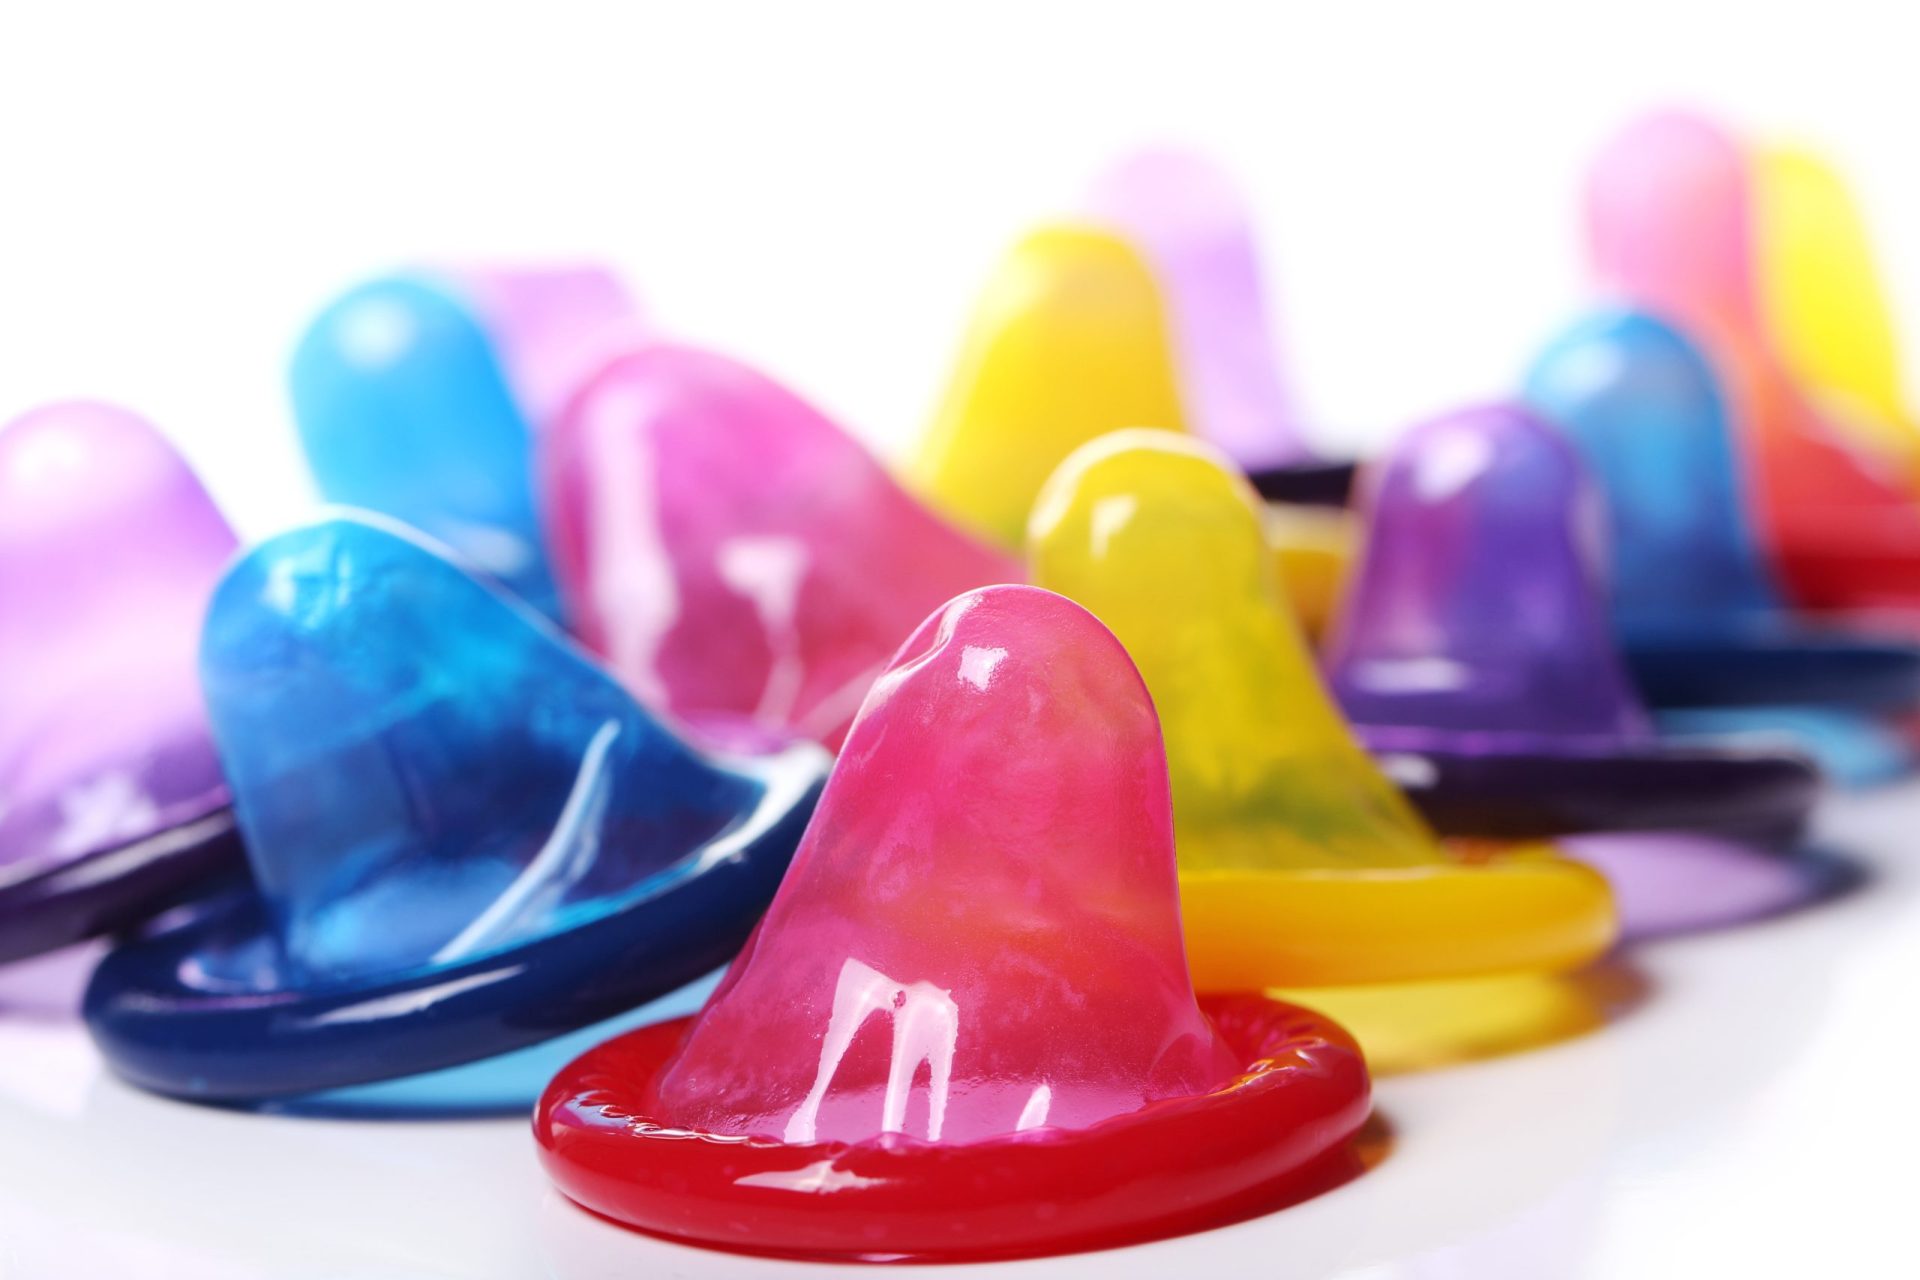 Infarmed alerta para existência de preservativos contrafeitos no mercado